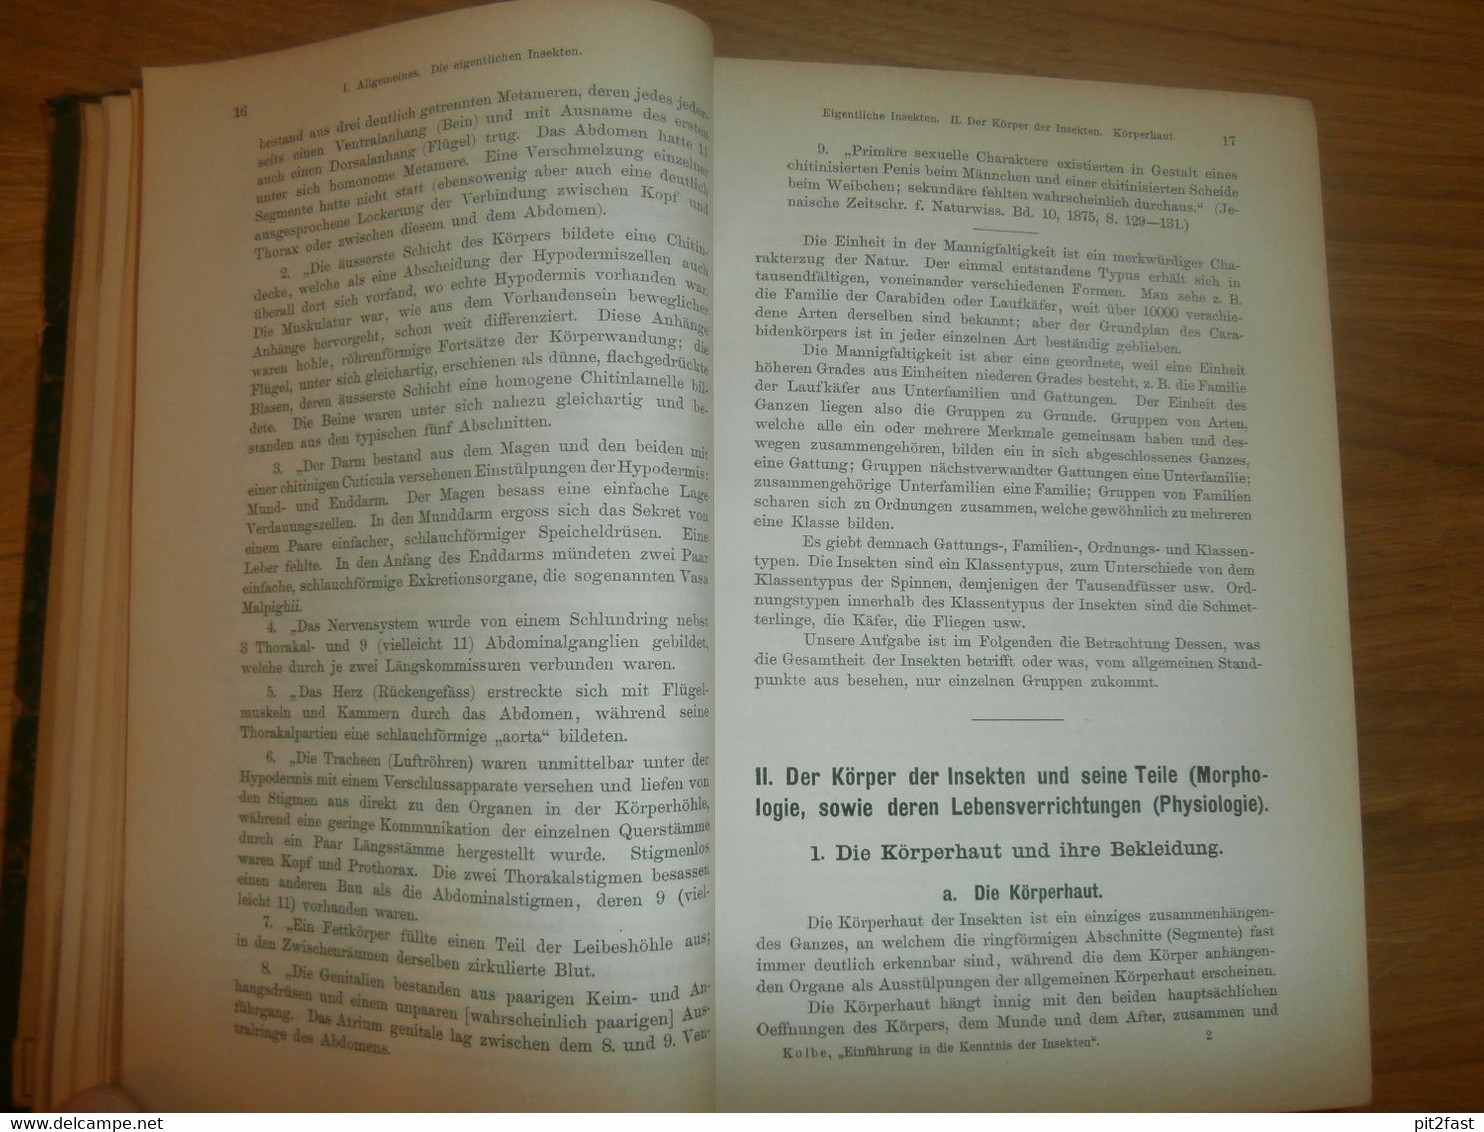 Einführung in die Kenntnis der Insekten , 1893 , H.J. Kolbe , kgl. Museum der Naturkunde , Insektenkunde ,Entomologie !!